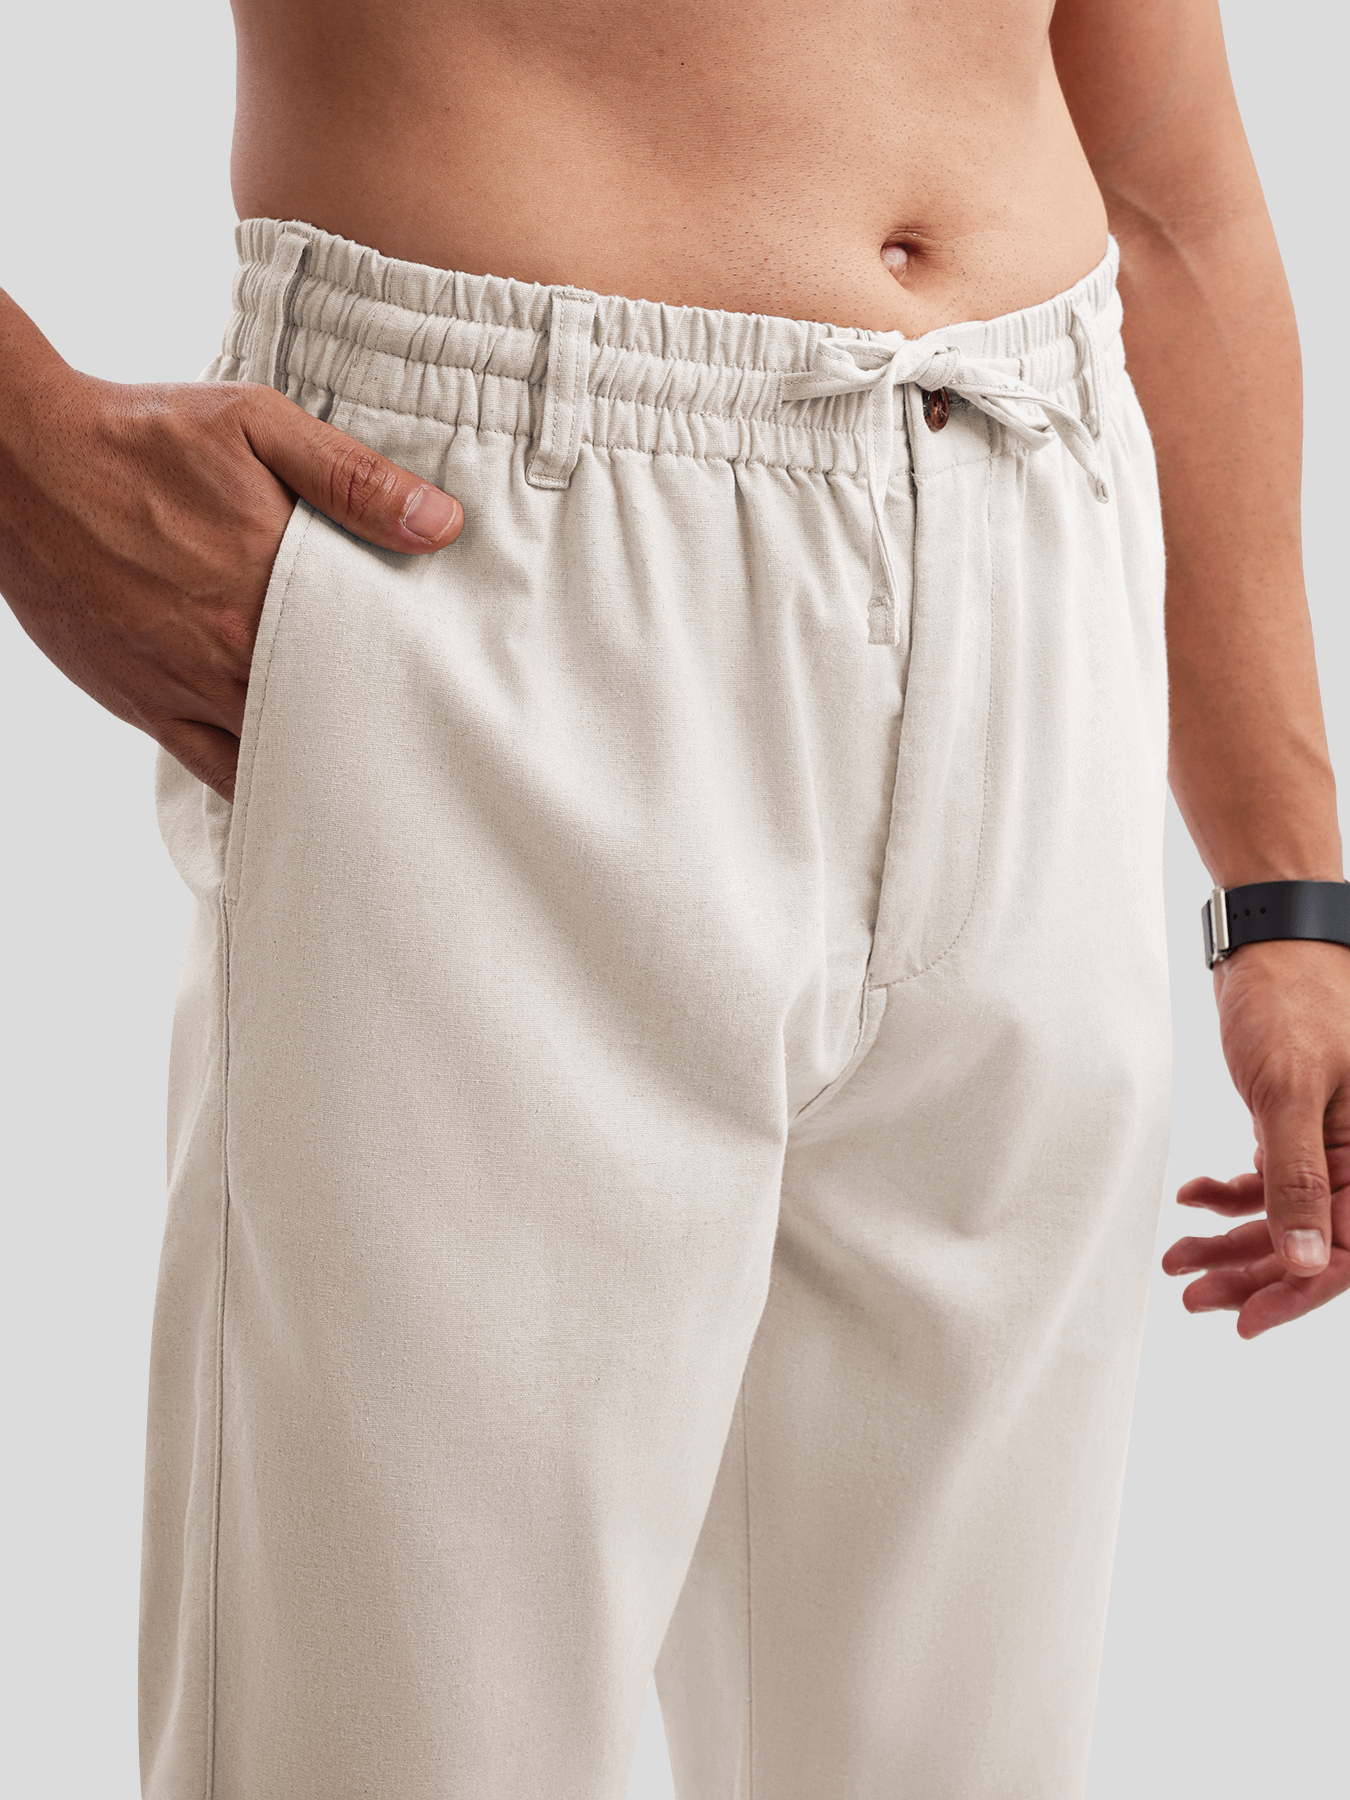 DreamWear Italian Linen Elastic Drawstring Pants